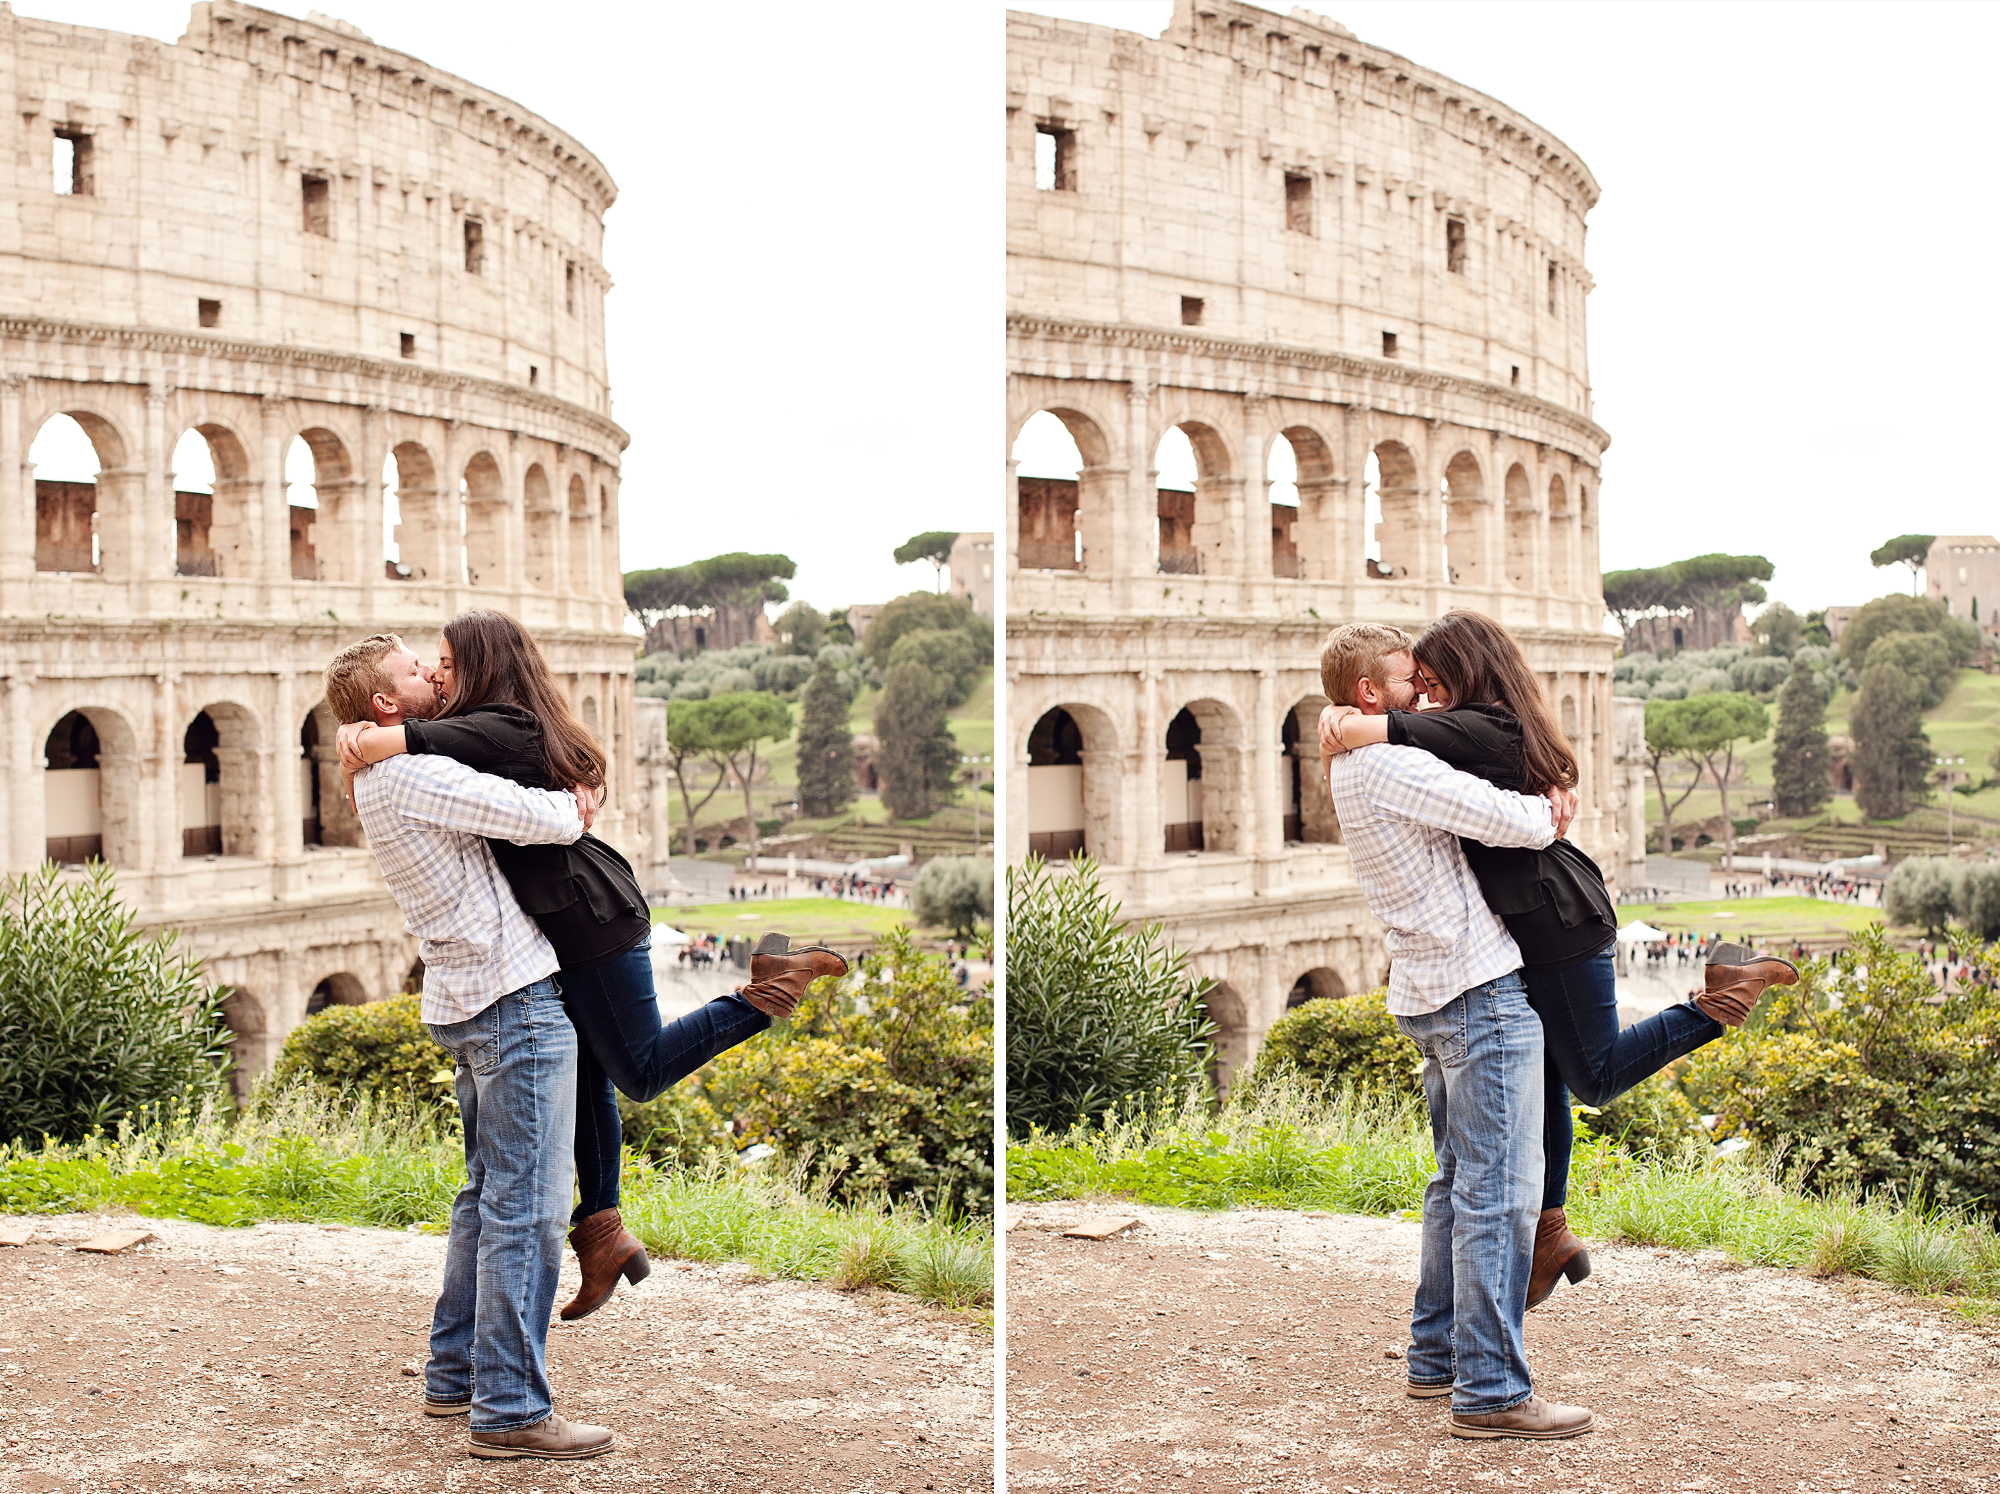 Colosseum surprise proposal